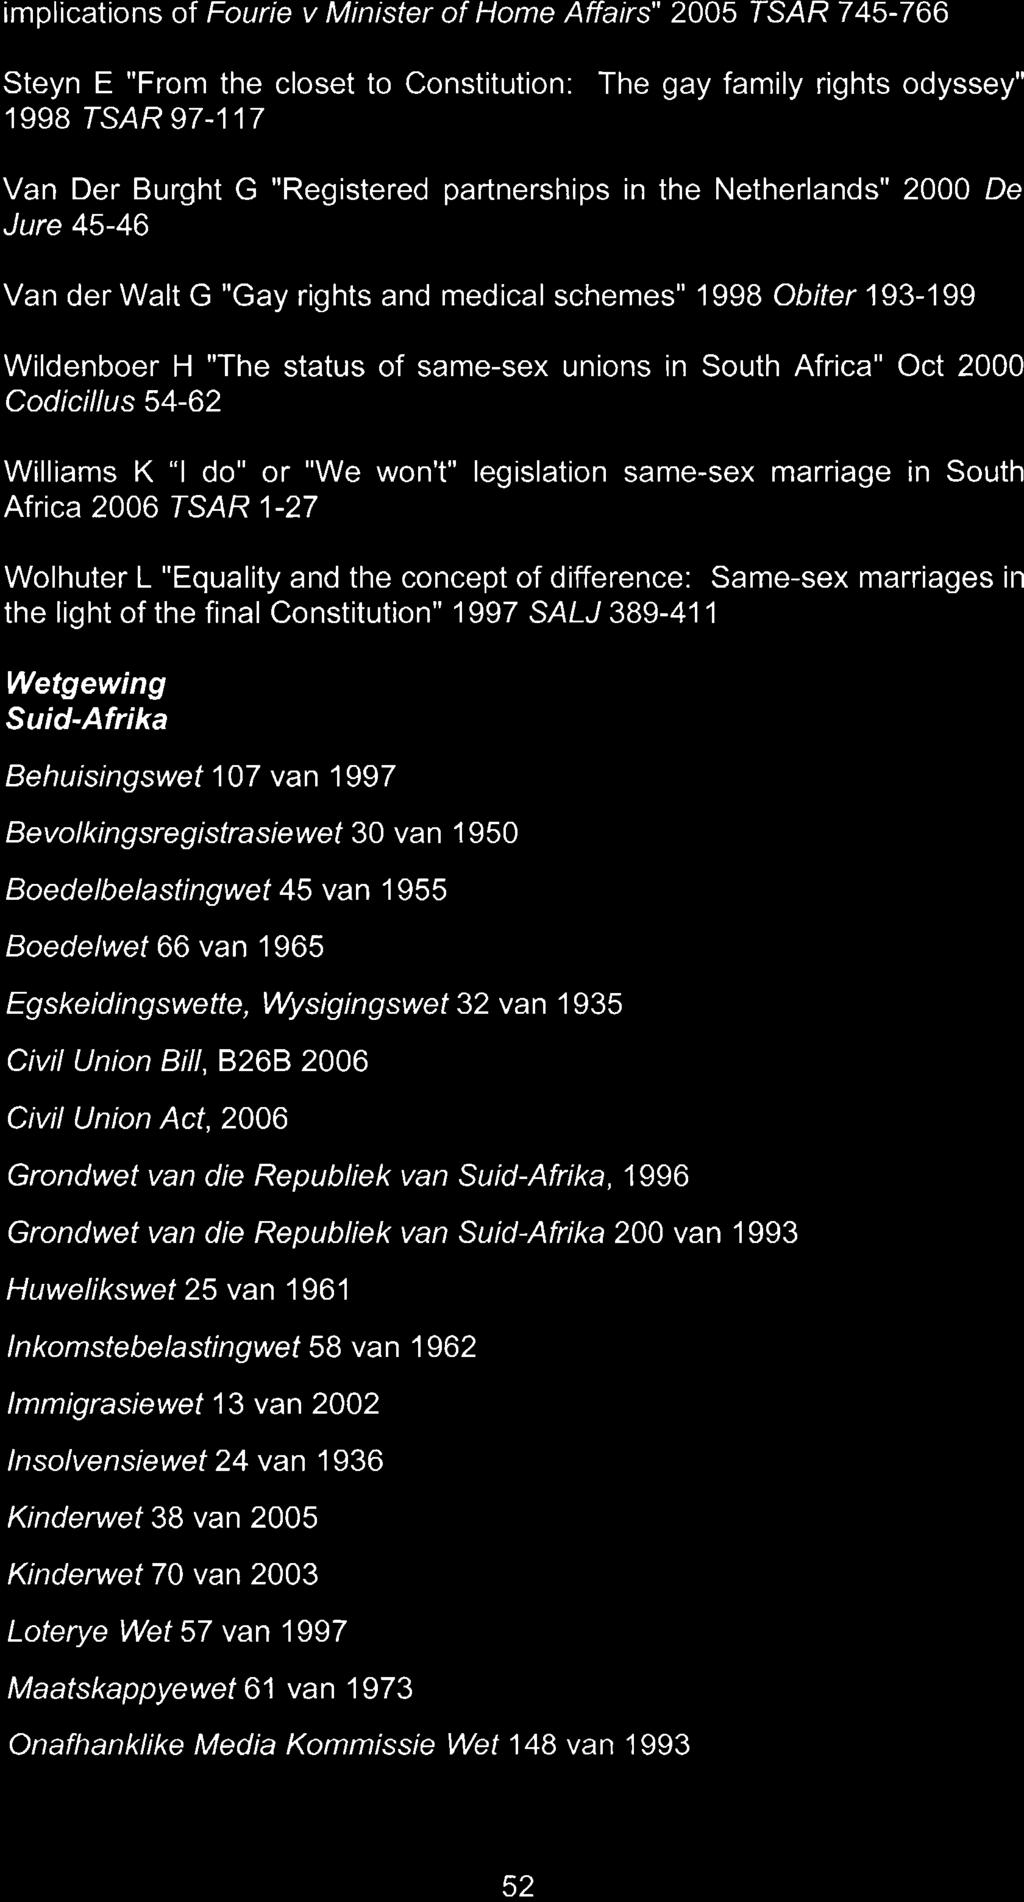 Wysigingswet 32 van 1 935 Civil Union Bill, B26B 2006 Civil Union Act, 2006 Grondwet van die Repubiiek van Suid-Afrika, 1996 Grondwet van die Republiek van Suid-Afrika 200 van 1993 Huwelikswet 25 van